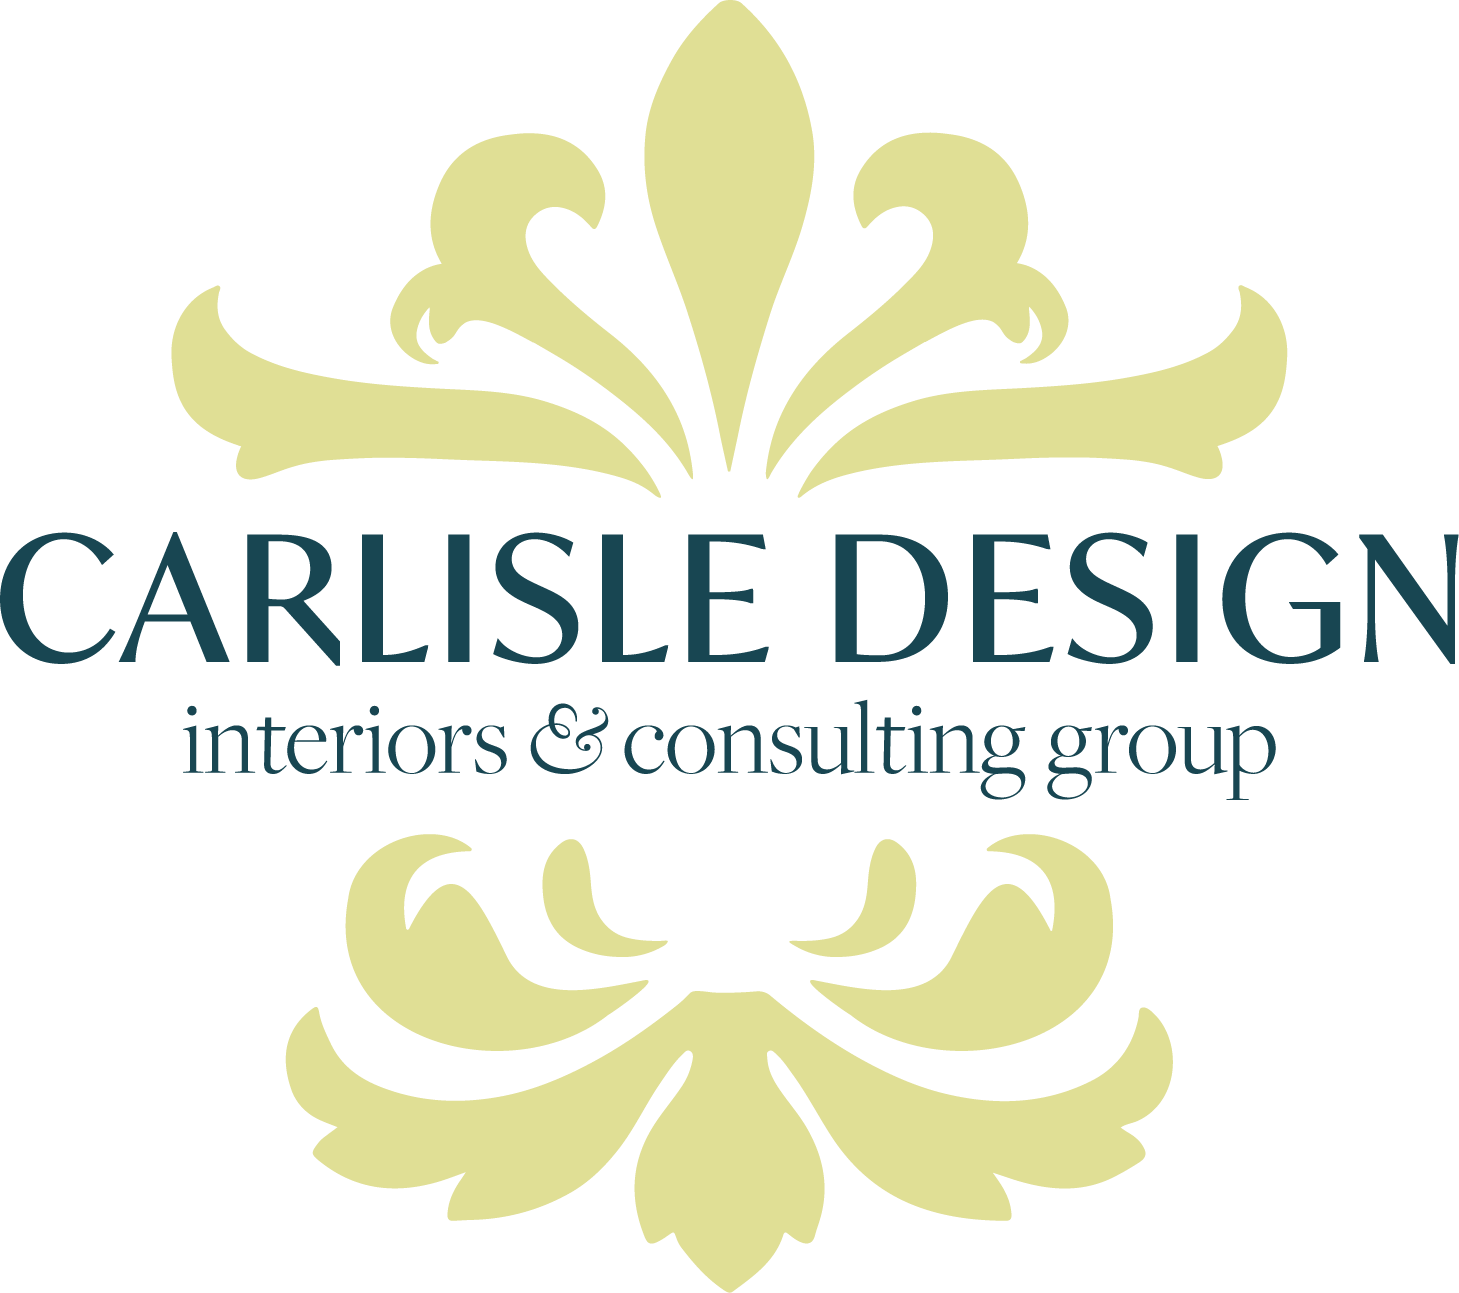 Carlisle Design Interiors